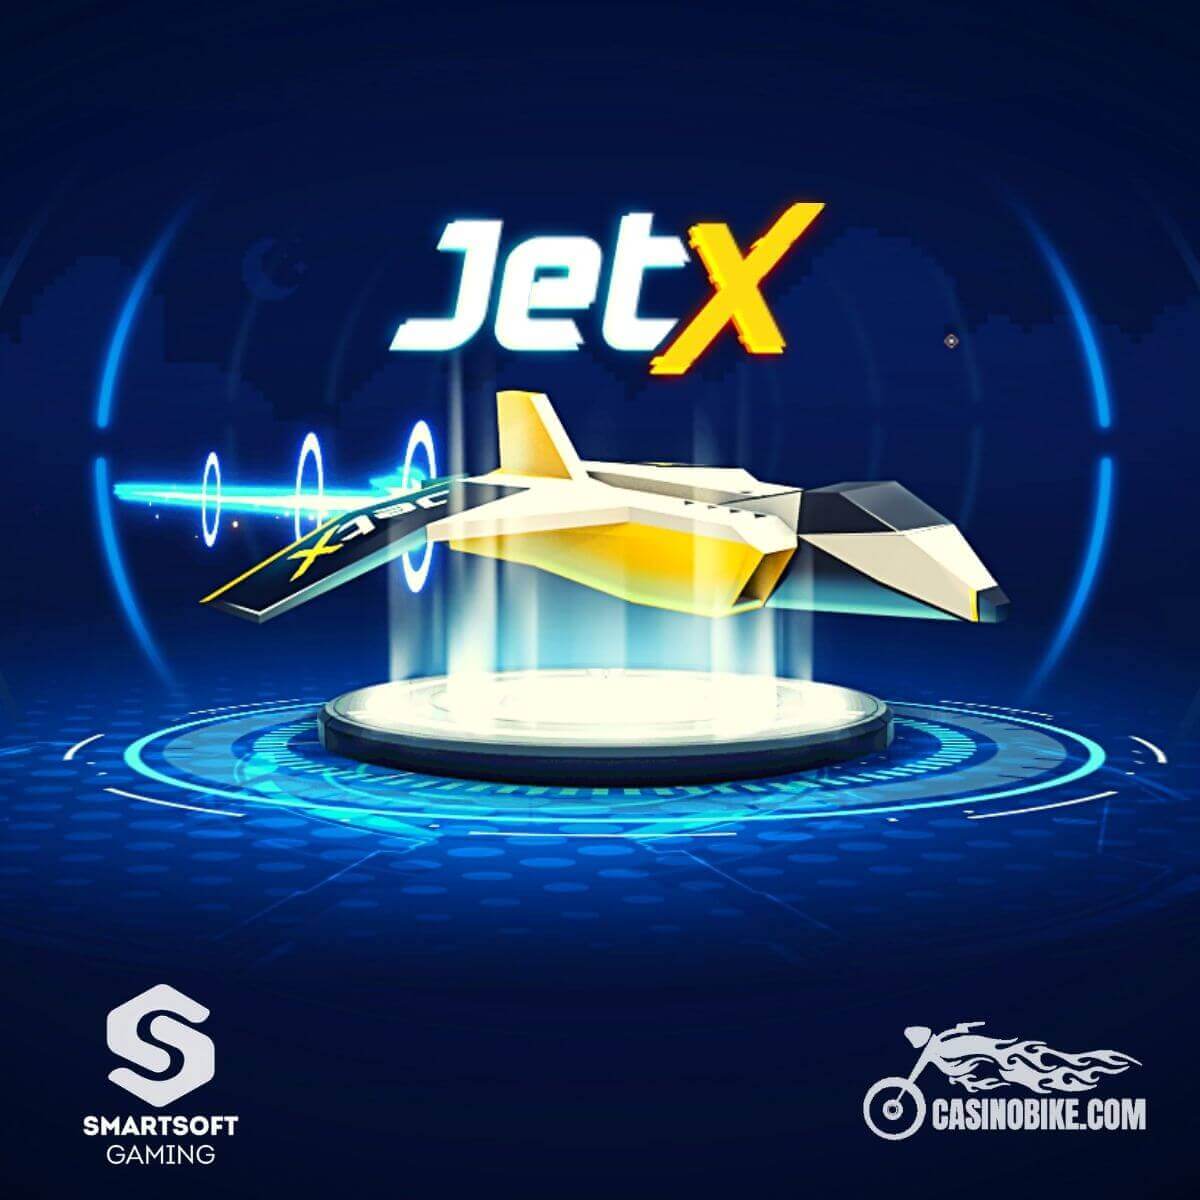 Jetx play jetx top. JETX Casino. JETX PNG.